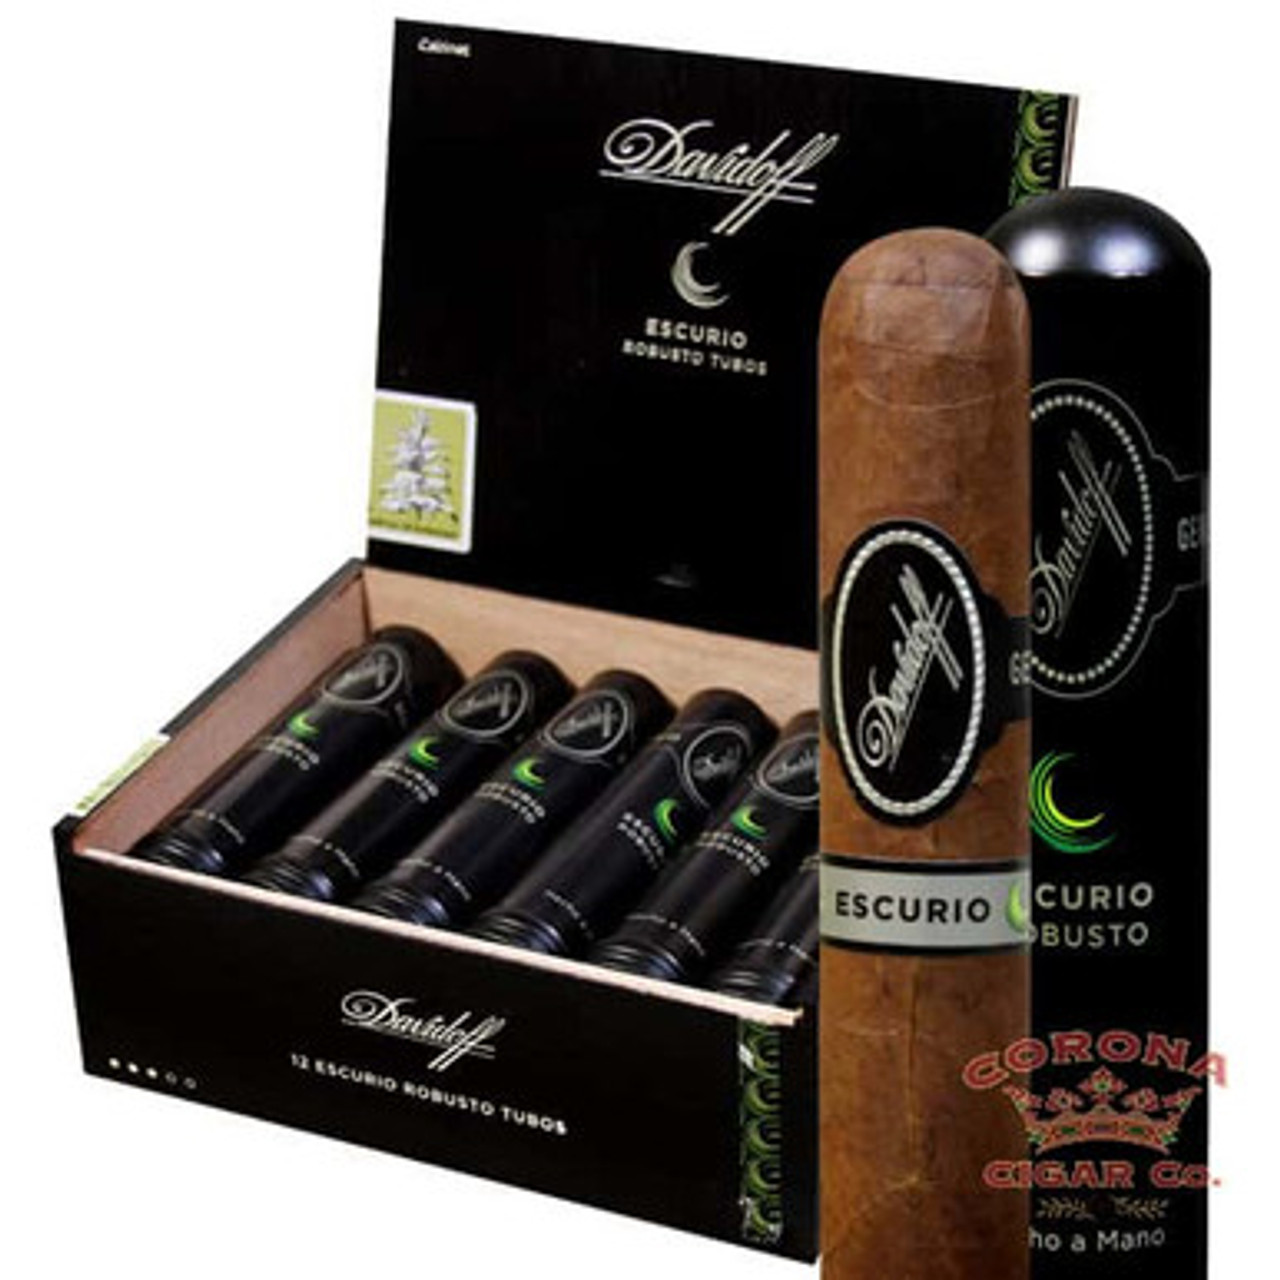 Davidoff Escurio Robusto Tubos (4 1/2 x 54) - Corona Cigar Co.